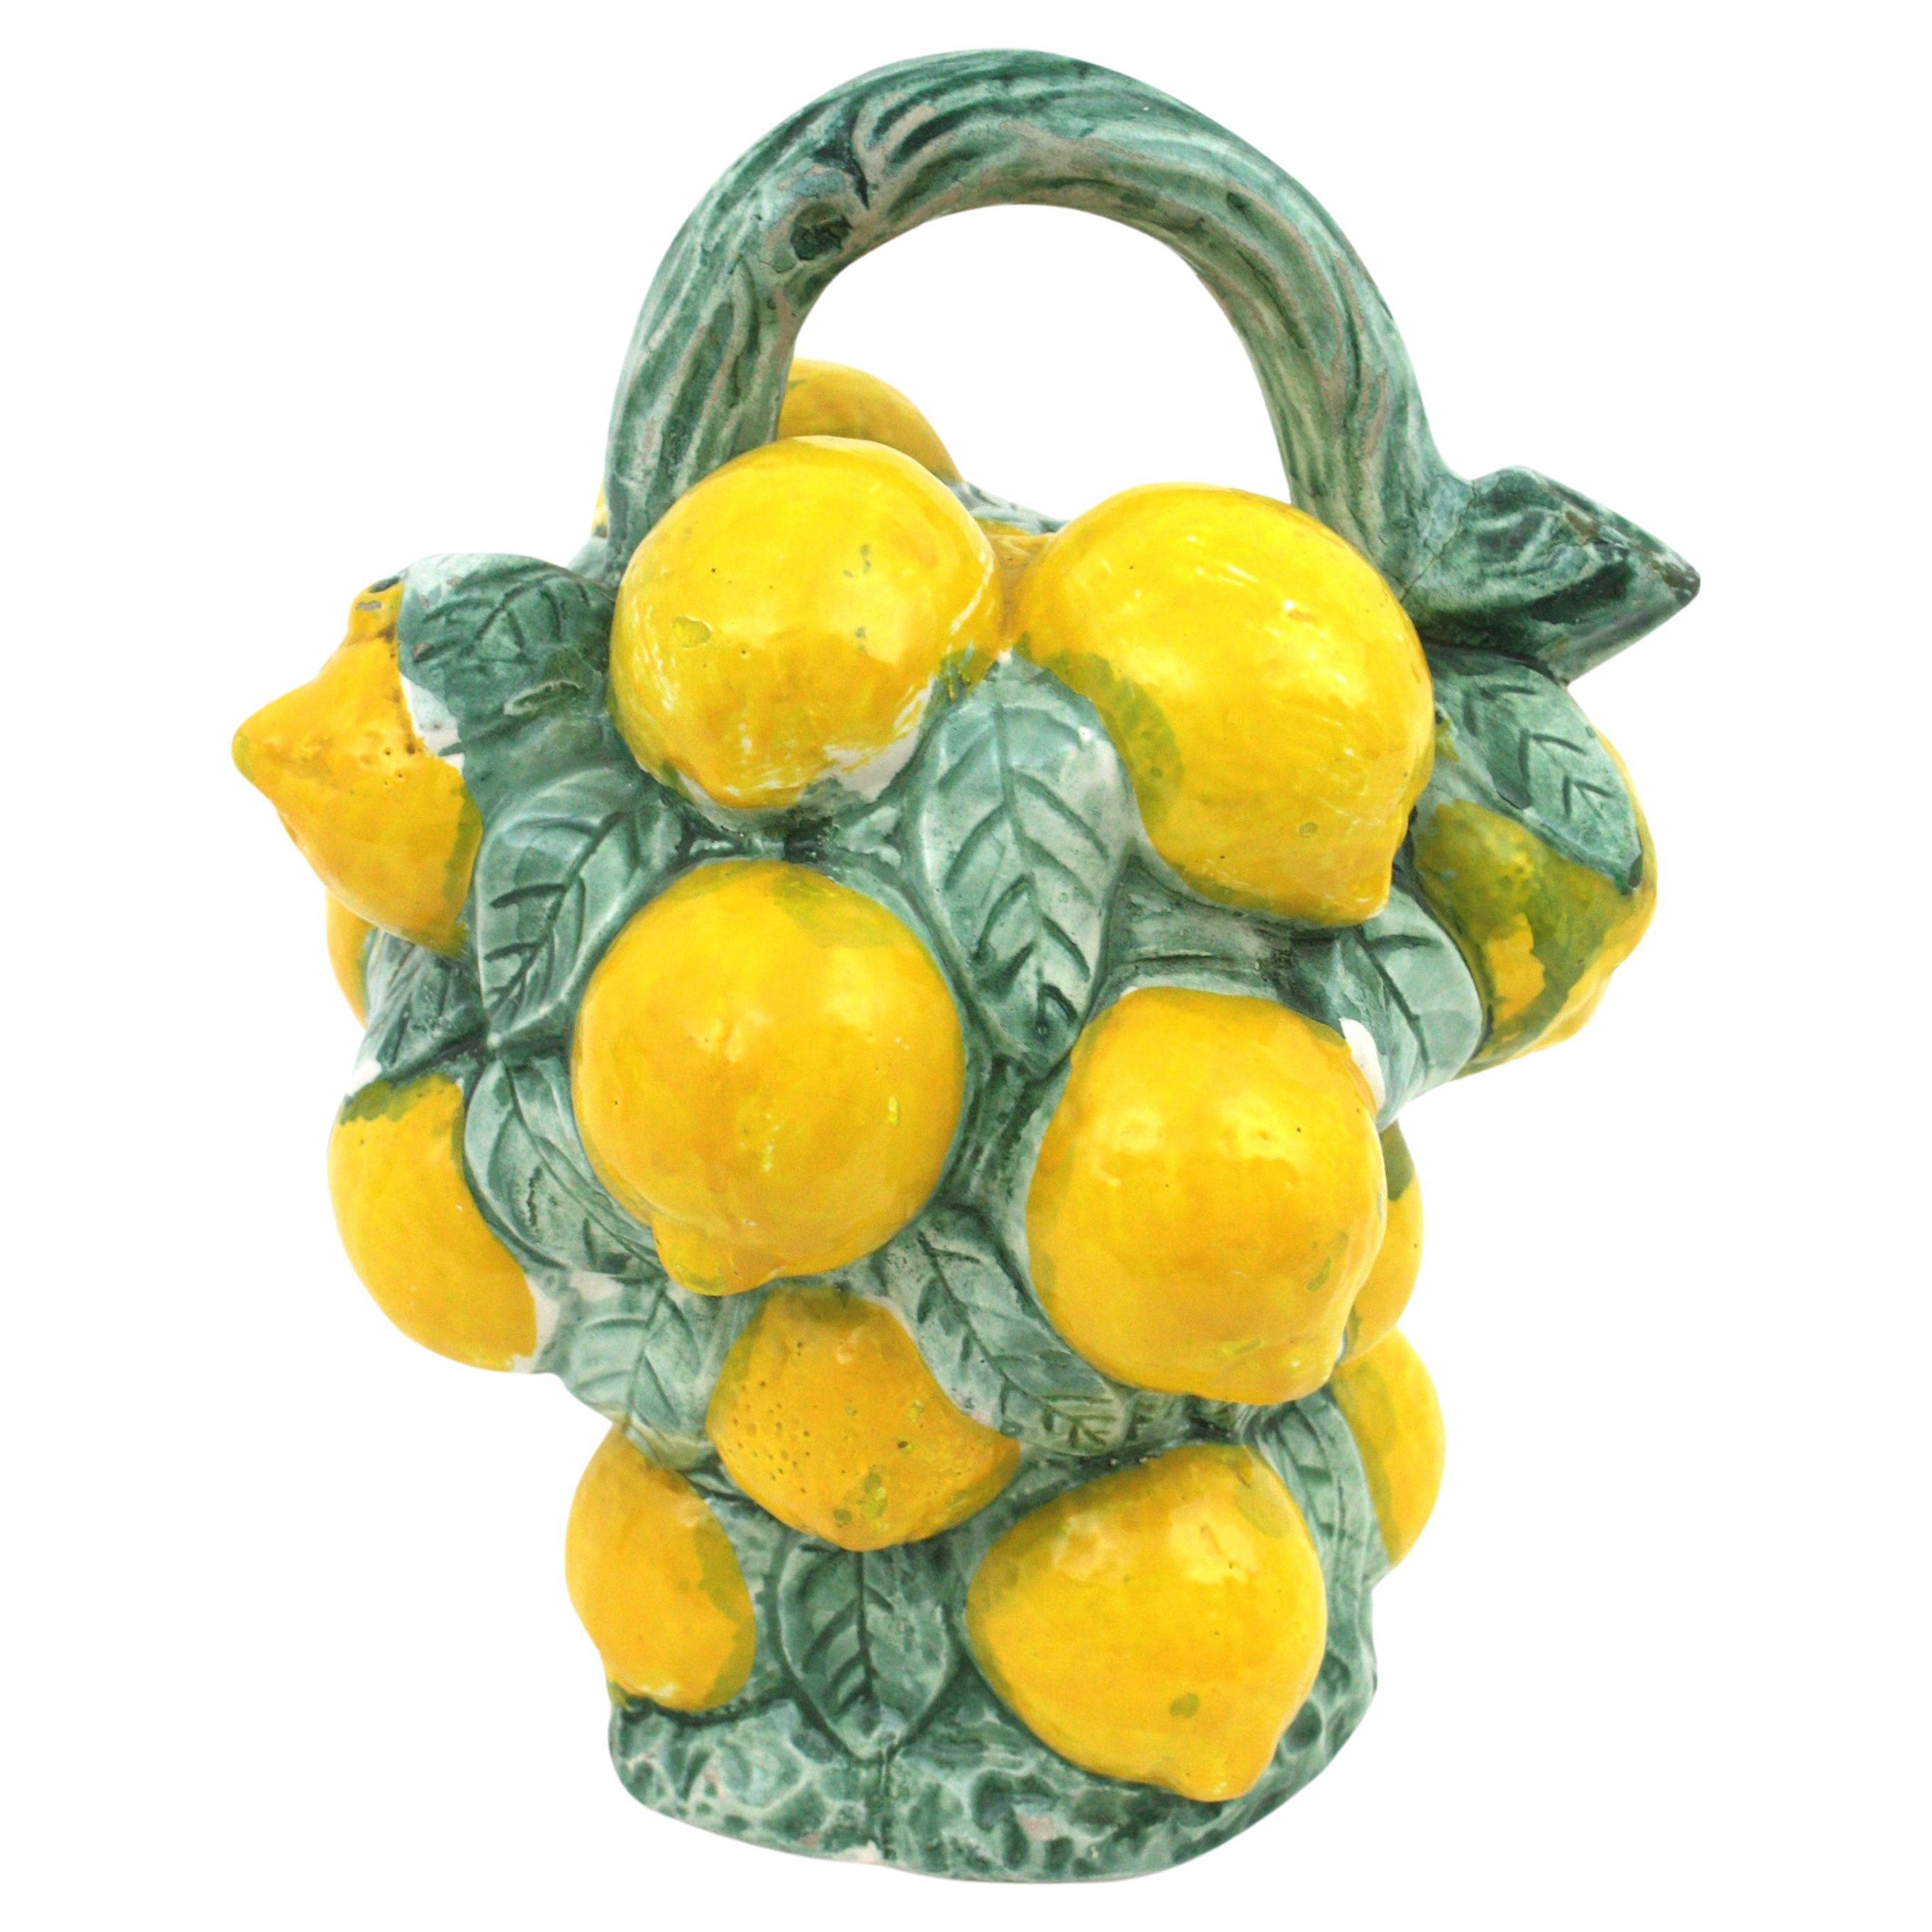 Auffälliger, realistischer Majolika-Zitronenkrug / -krug aus mehrfarbig glasierter Keramik,  Spanien, 1950er-1960er Jahre.
Handbemalter dekorativer Keramikkrug von Manises in Form eines Zitronenstraußes aus grün und gelb glasierter Keramik.
Ein